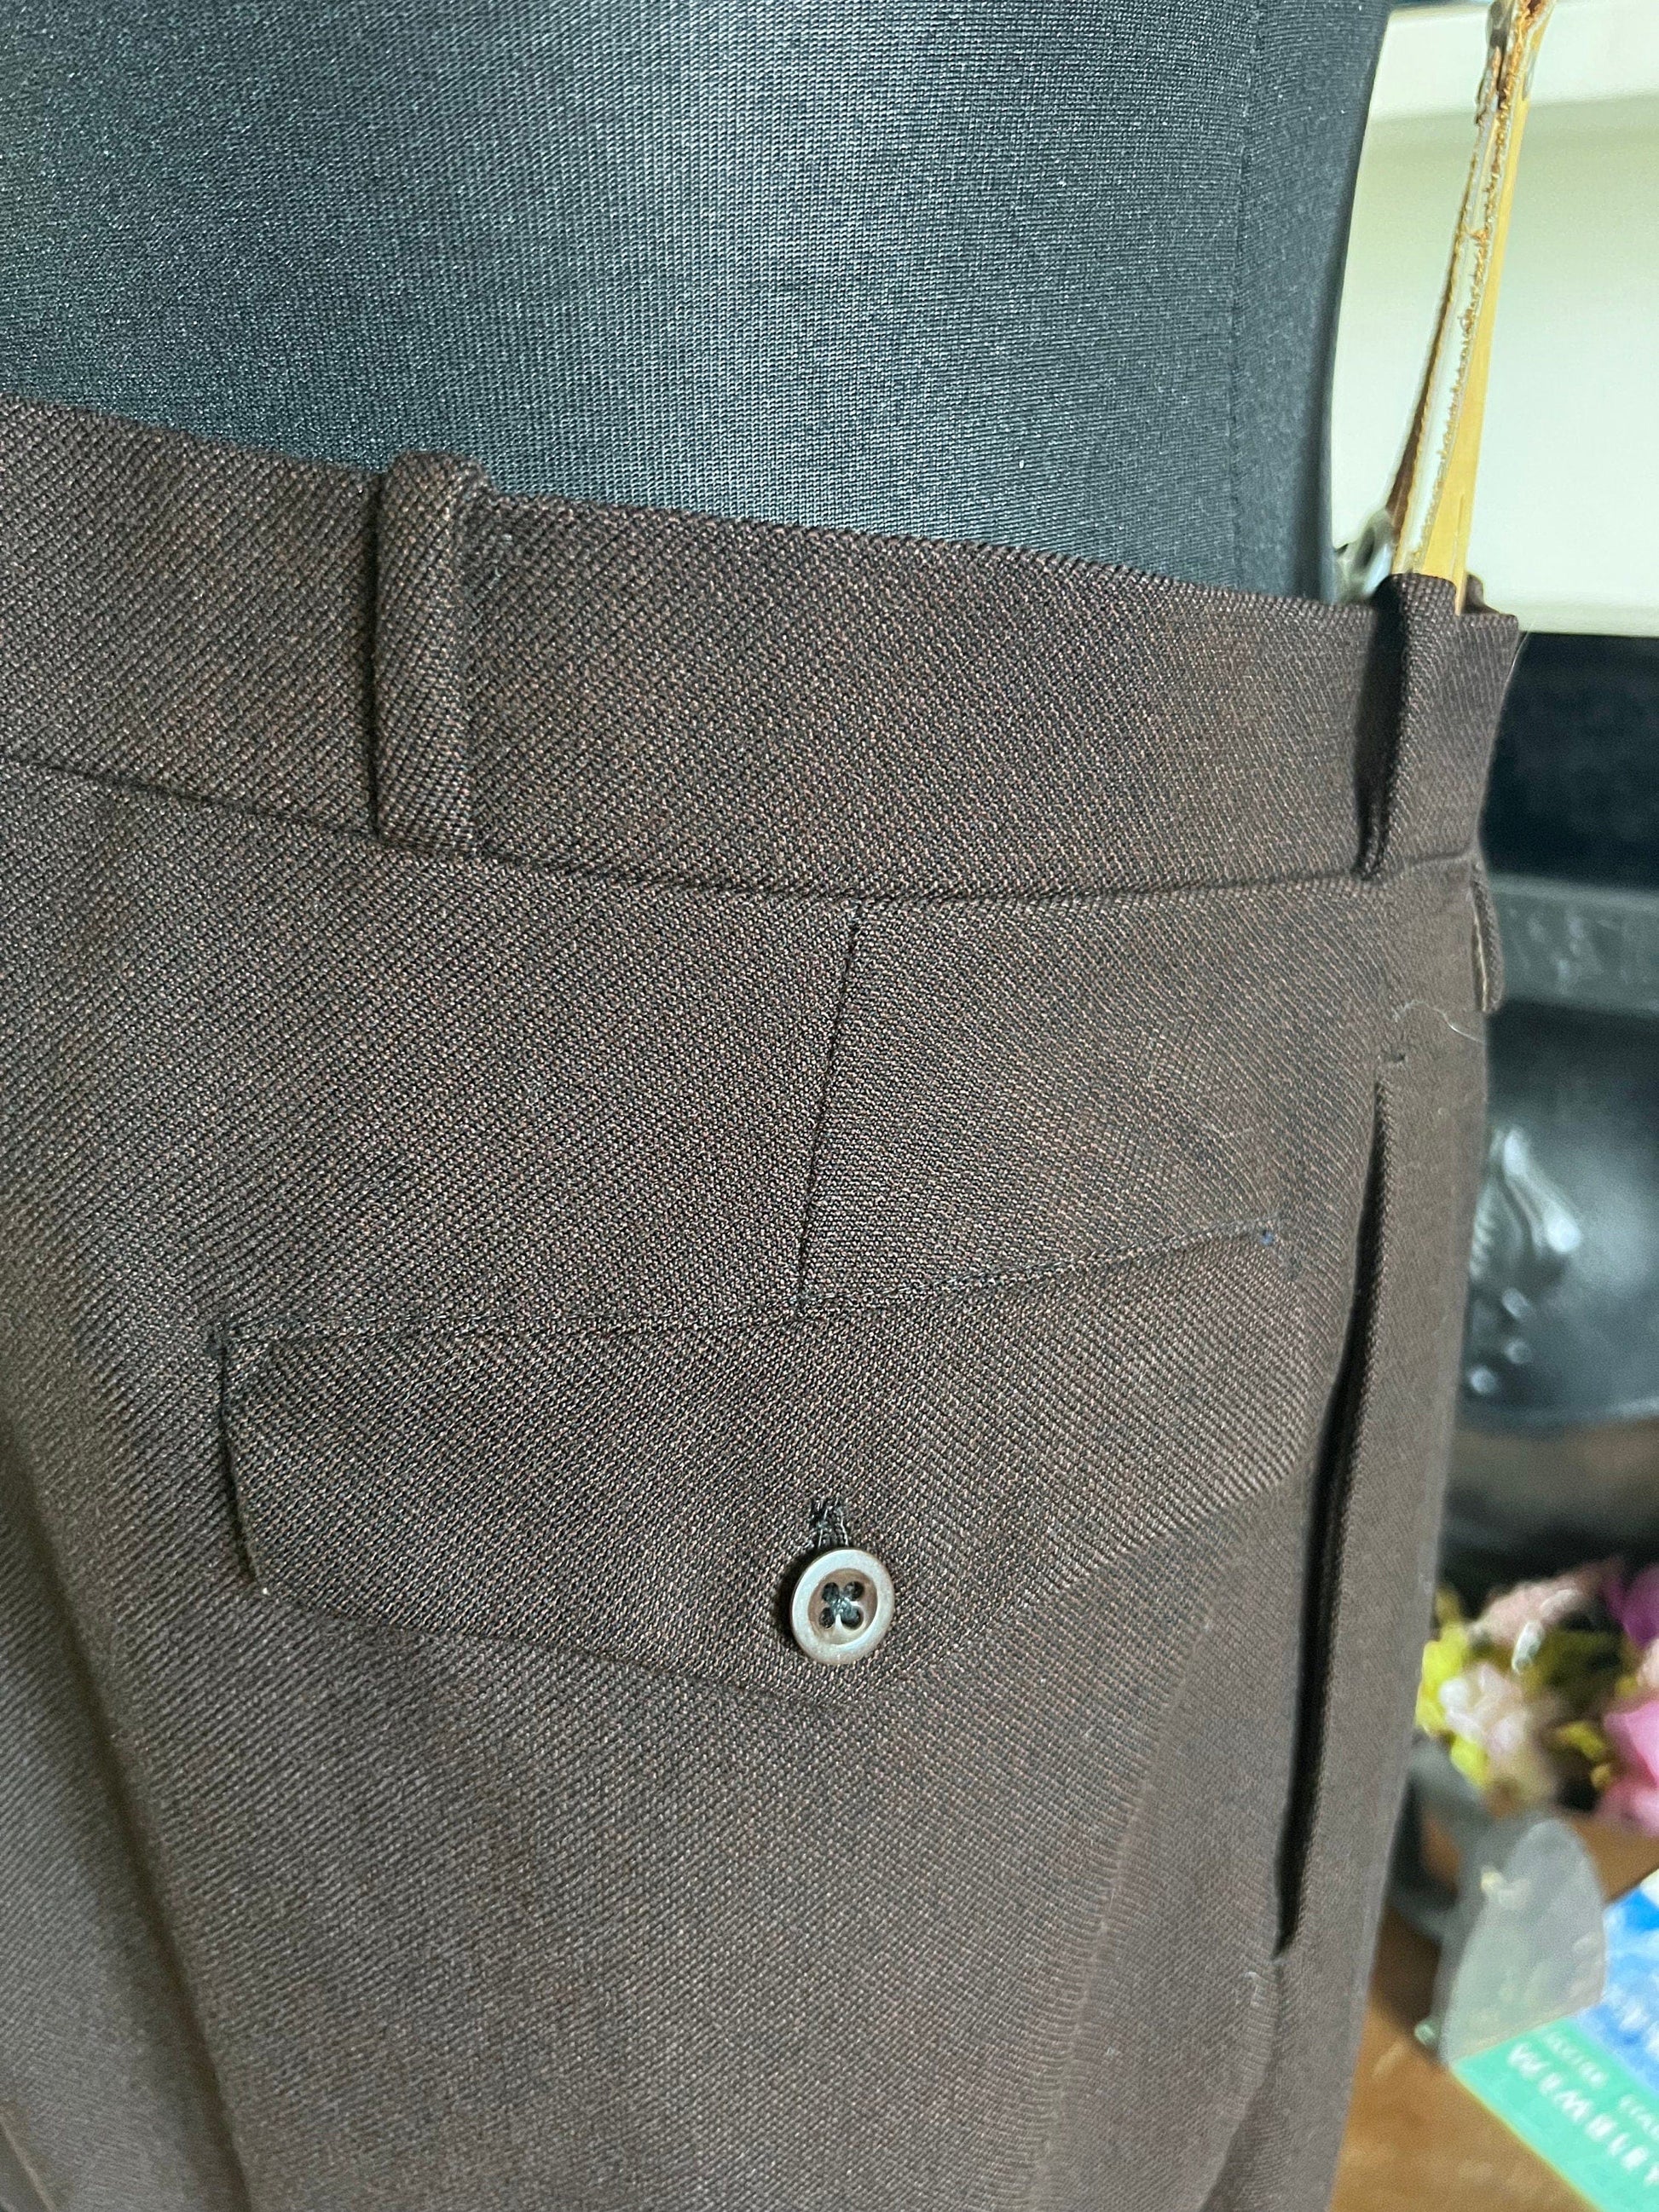 1940s Vintage Mens Brown, 2 Piece Suit, Trouser, Jacket, Mens Brown 40s suit, brown wool suit, Trousers, Jacket, Braces, 40ss vintage suit